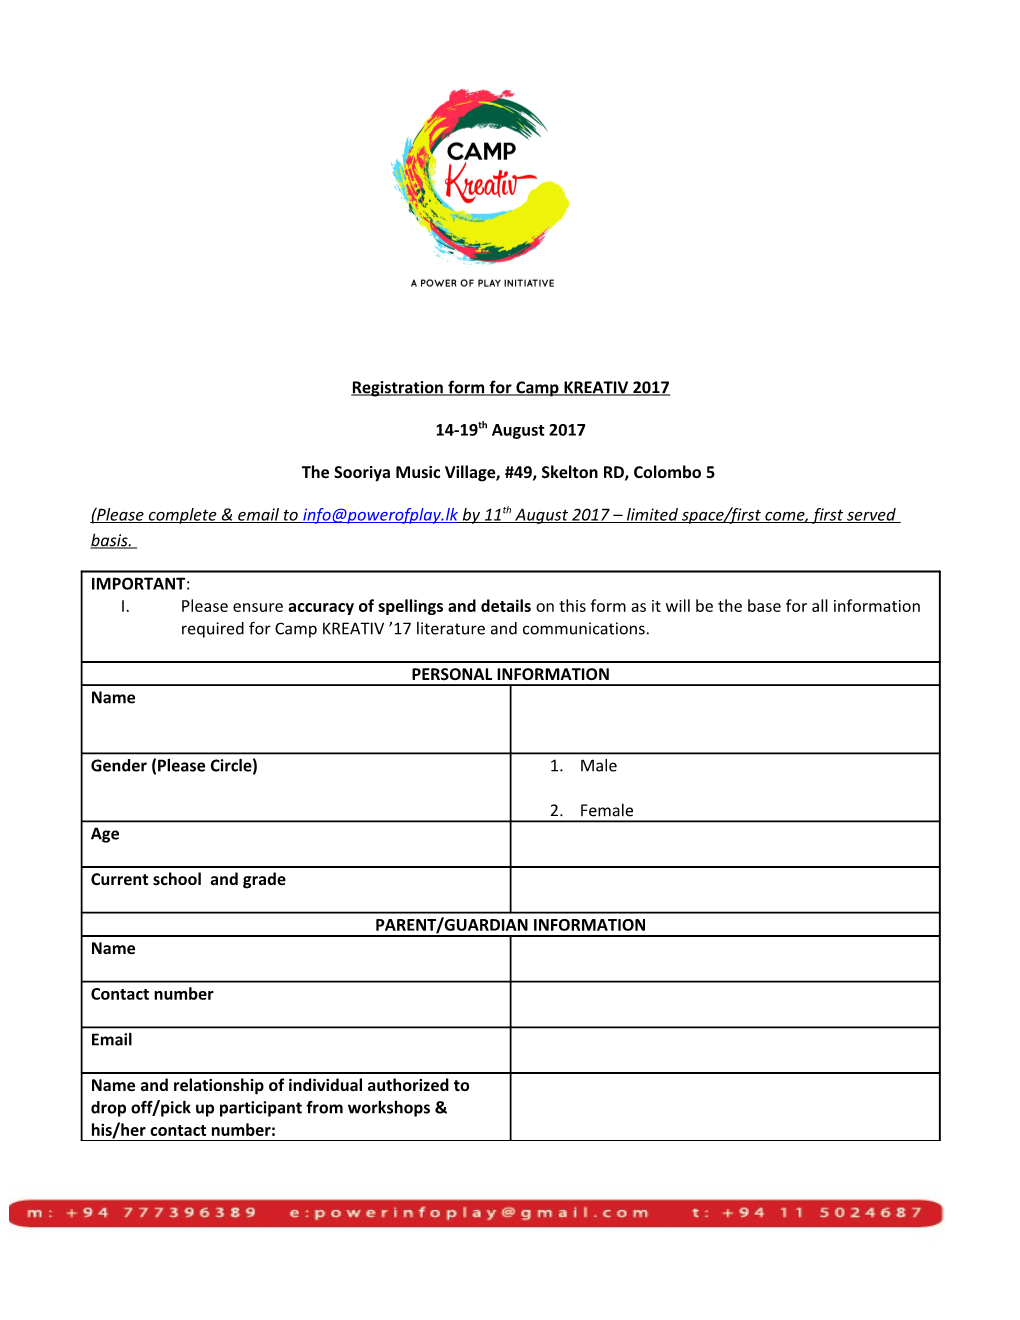 Registration Form for Camp KREATIV 2017